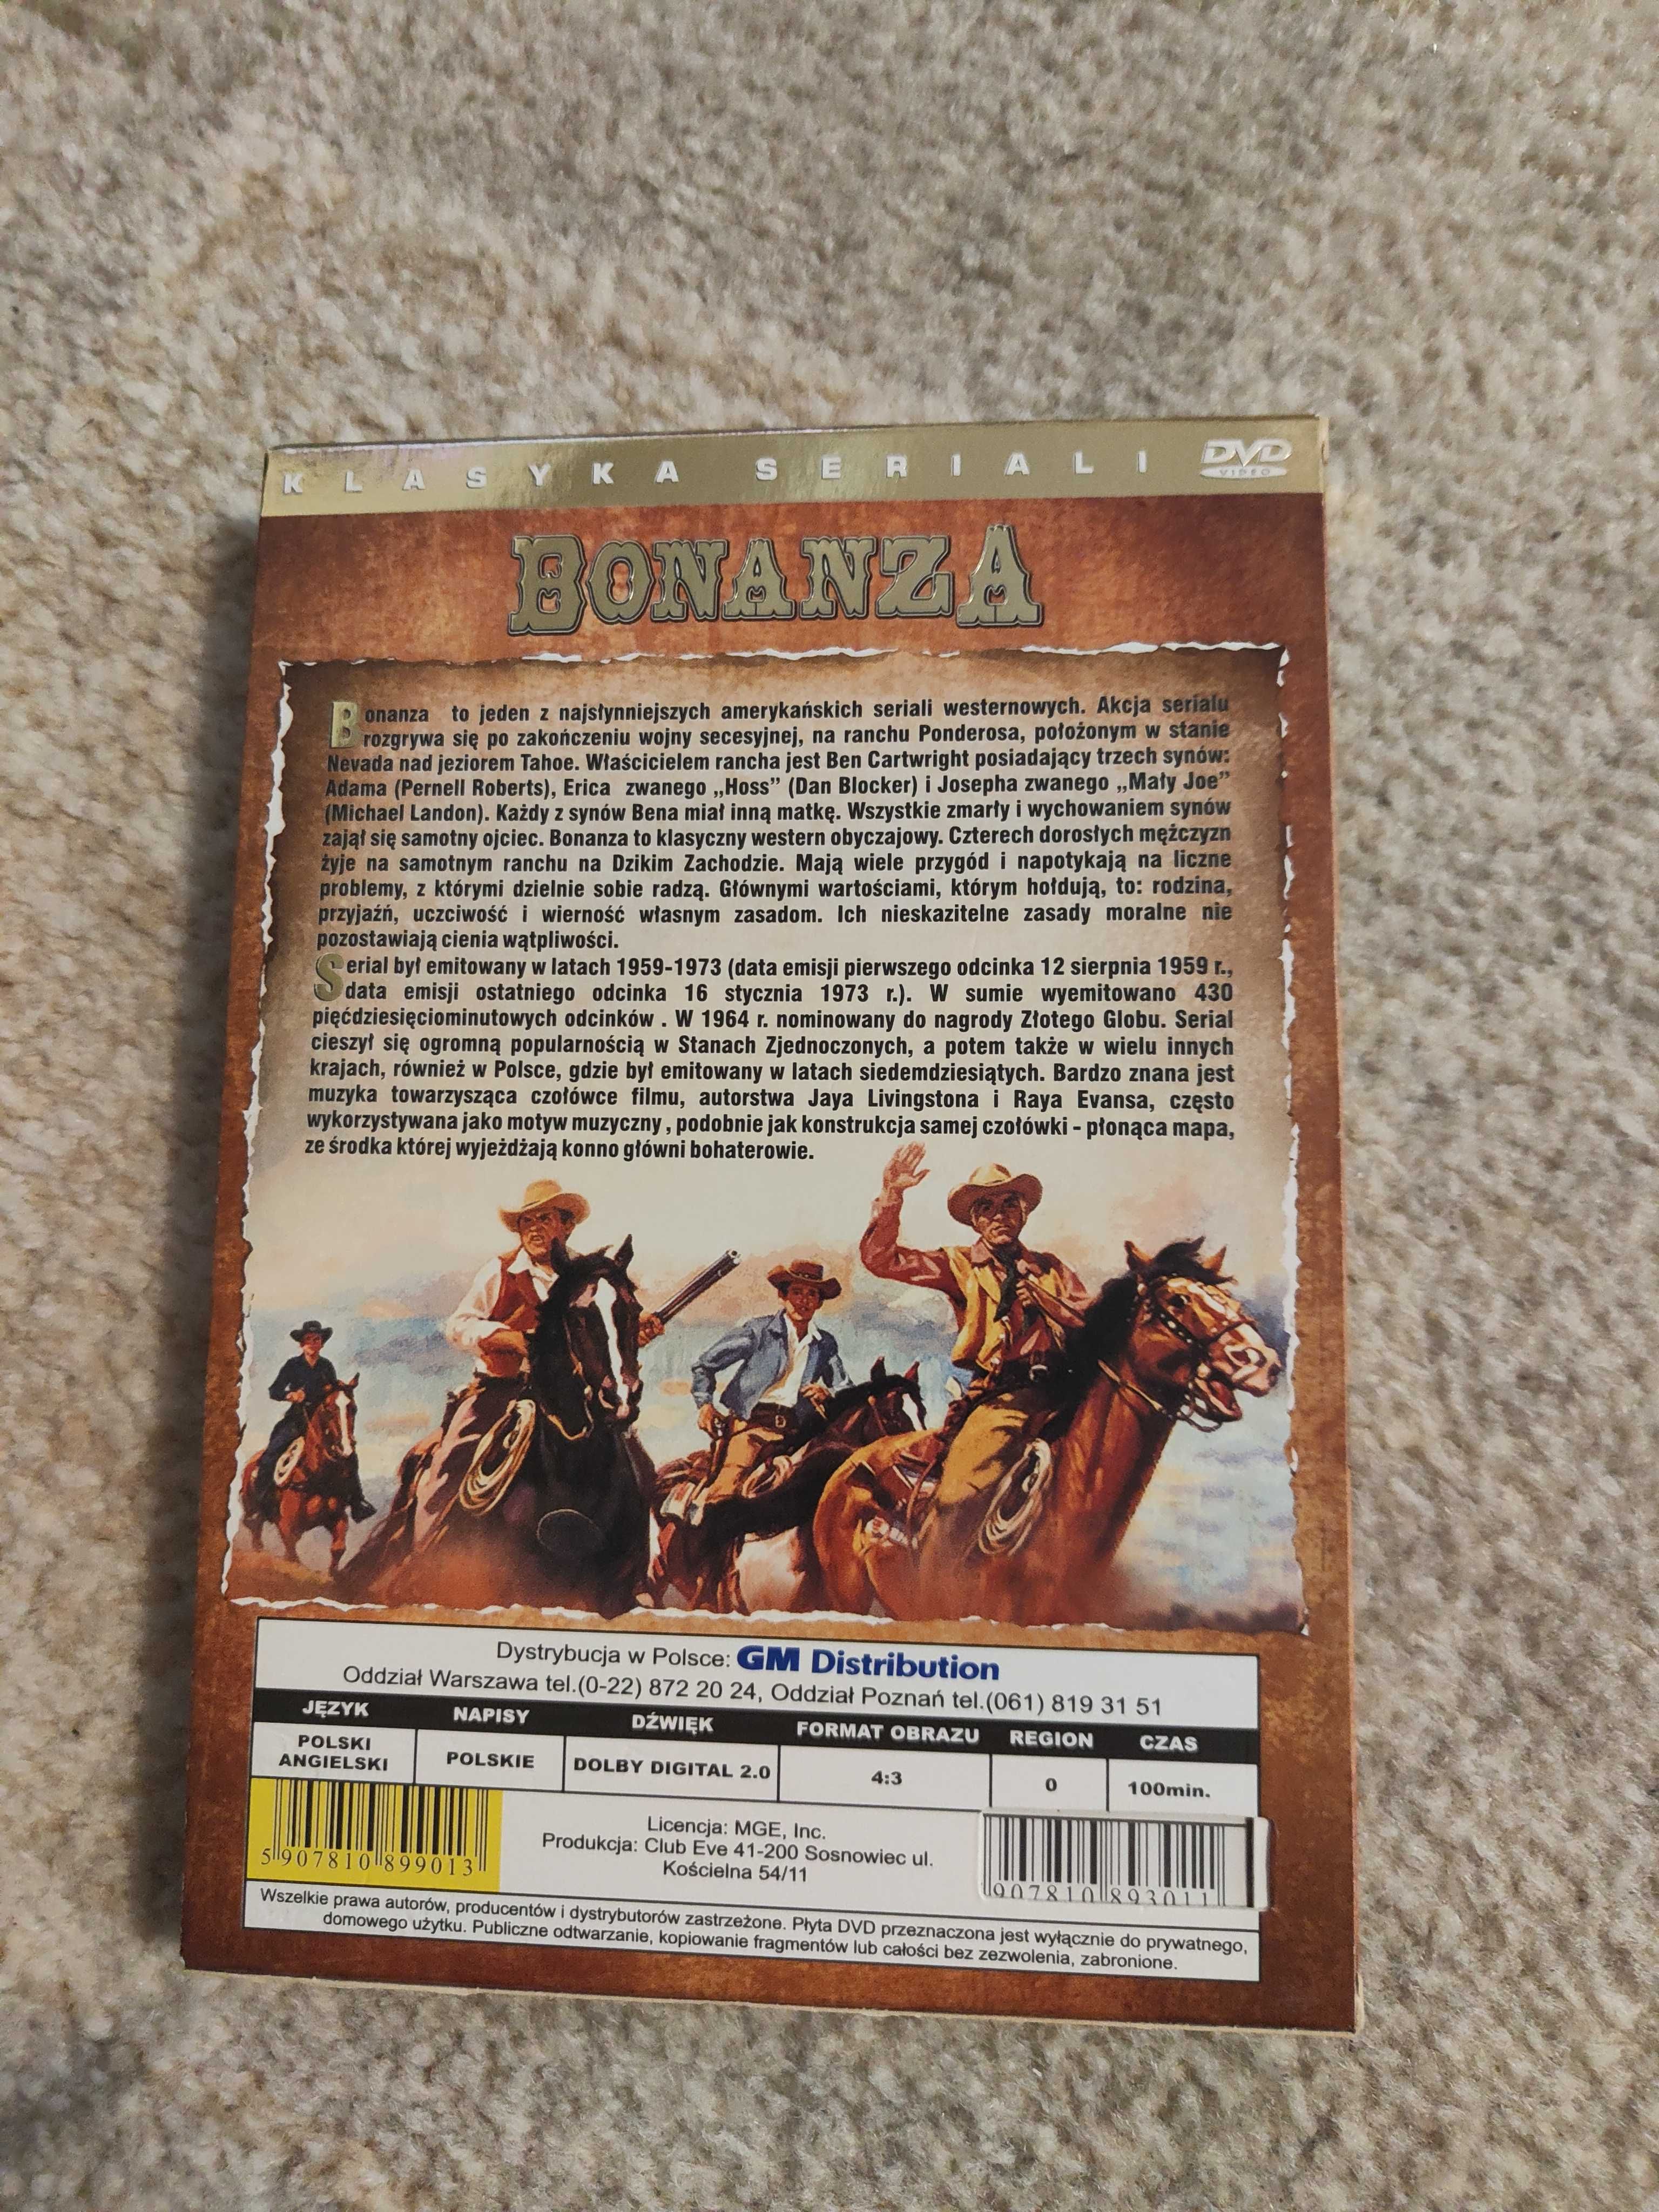 DVD western Bonanza w etui